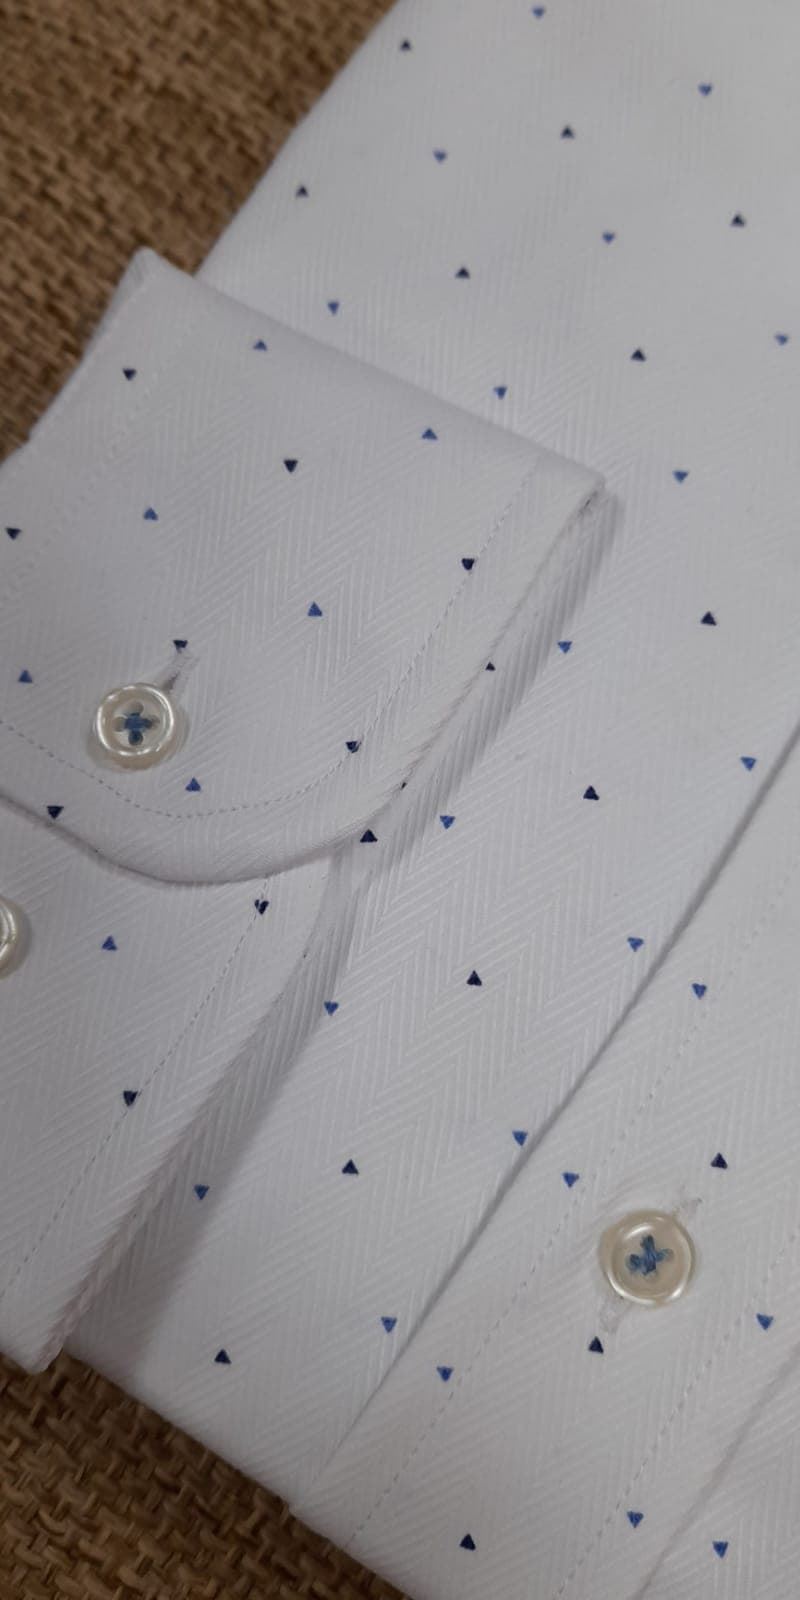 Camisa manga larga taylor azul - Imagen 2